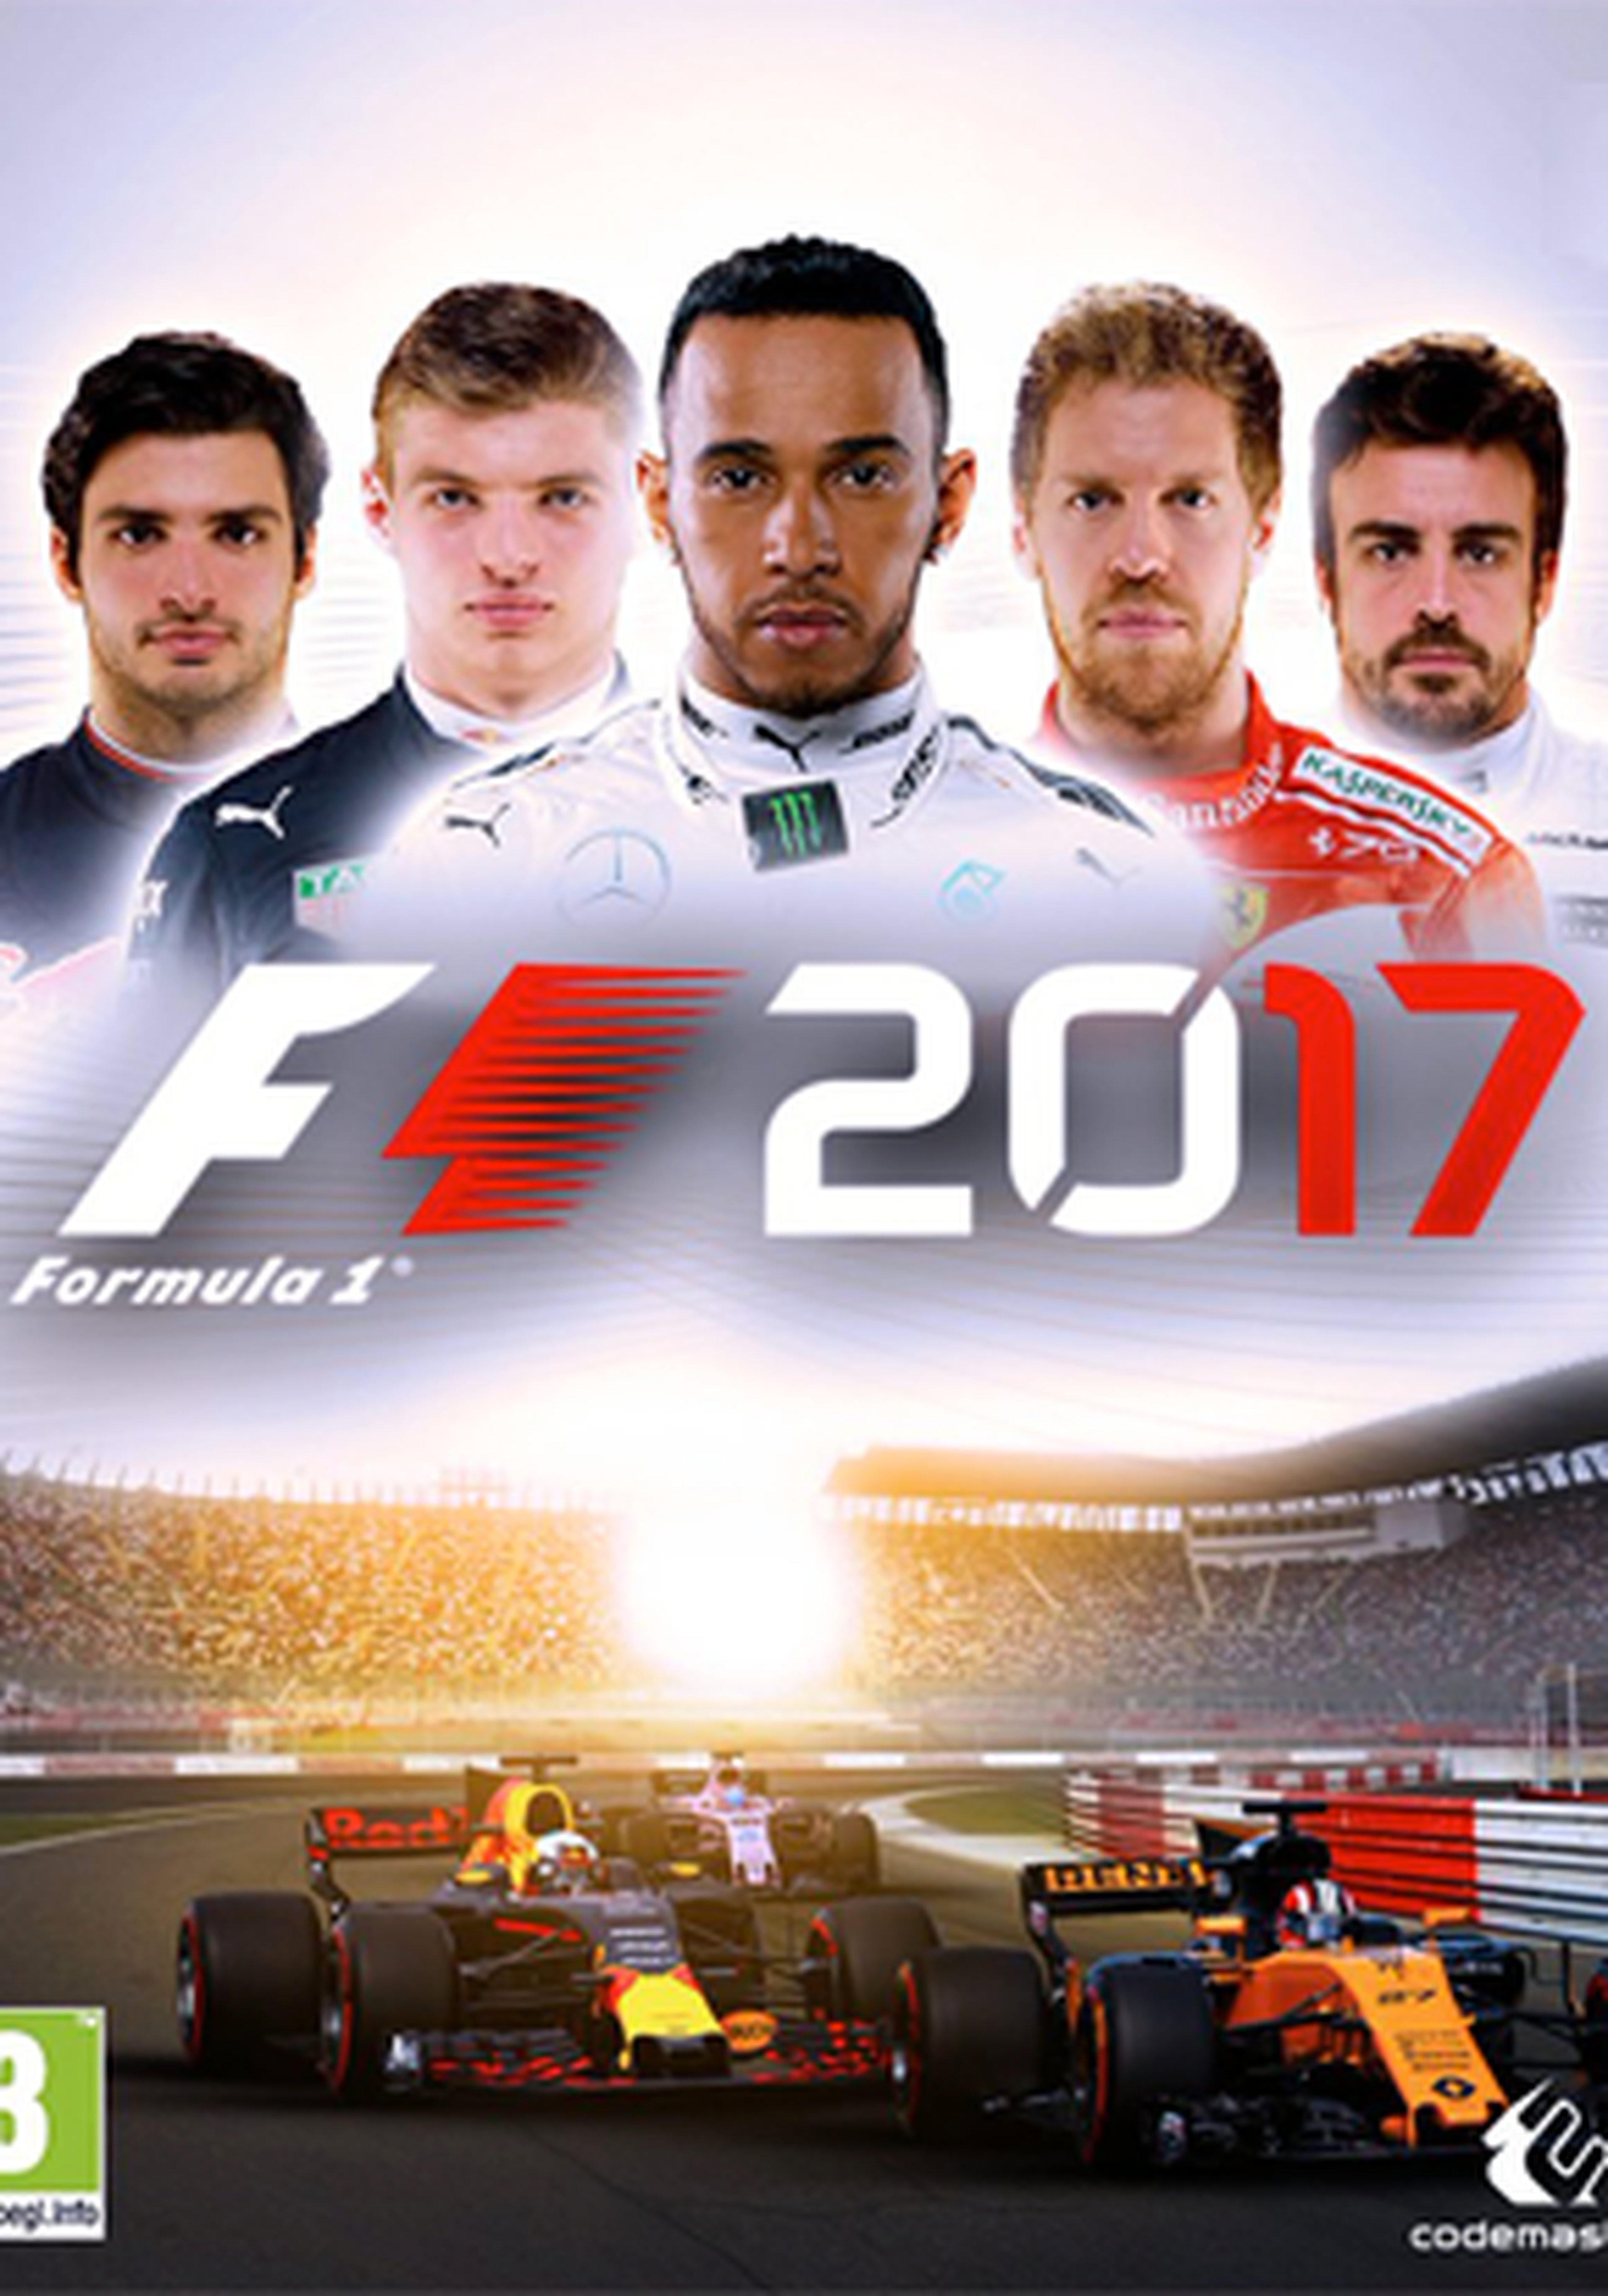 4 1 2017. F1 2017. F1 2017 game. F1 2017 обложка. F1 2017 игра обложка.